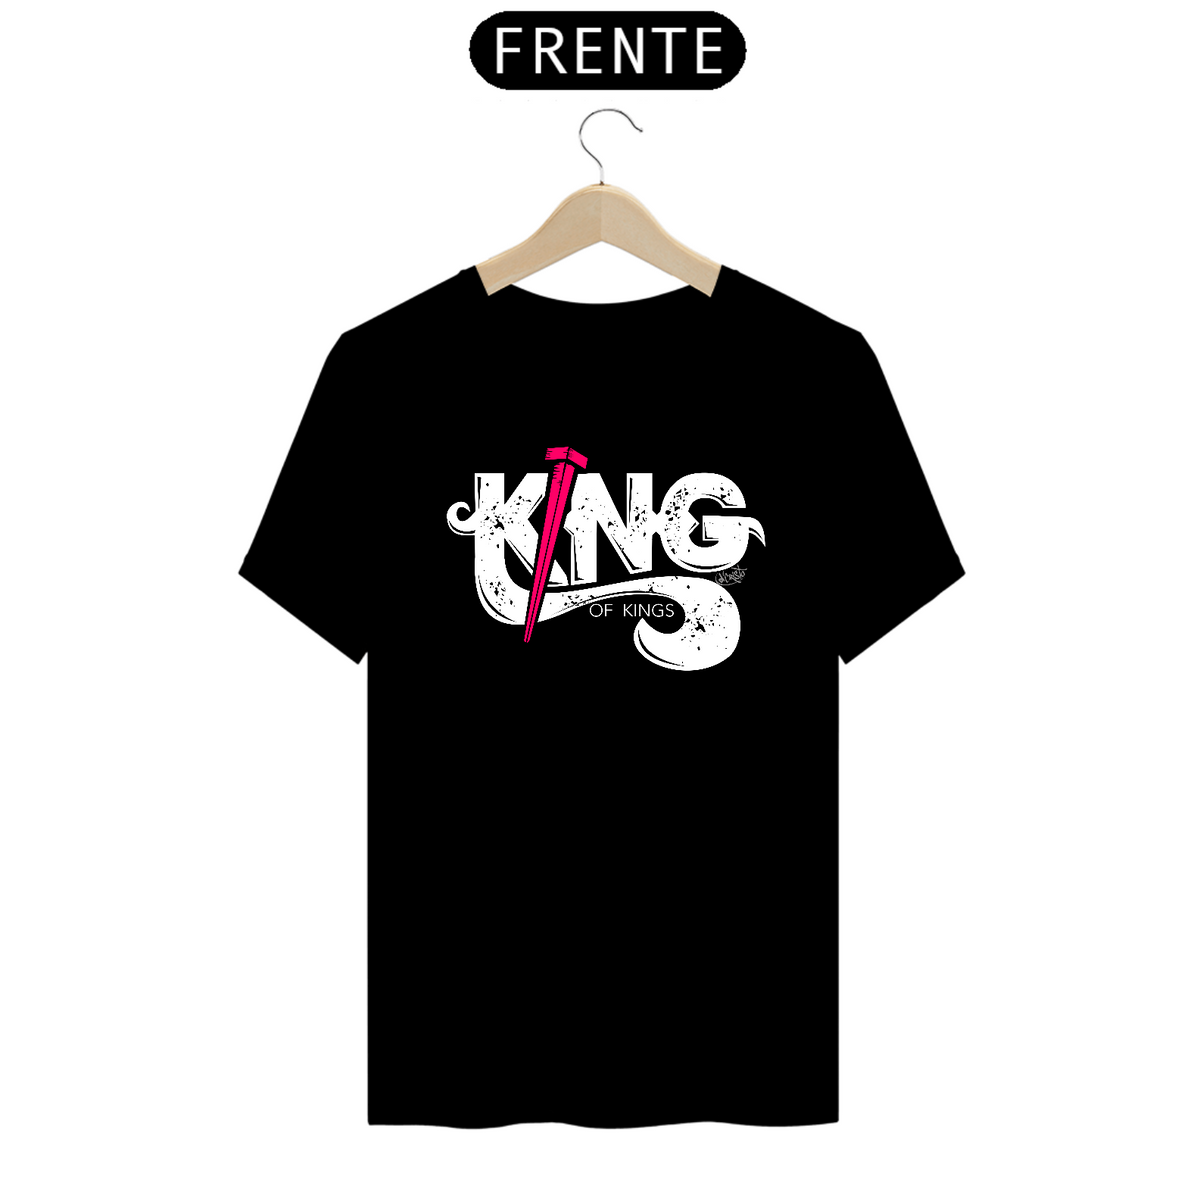 Nome do produto: Camiseta King of kings (cores escuras)